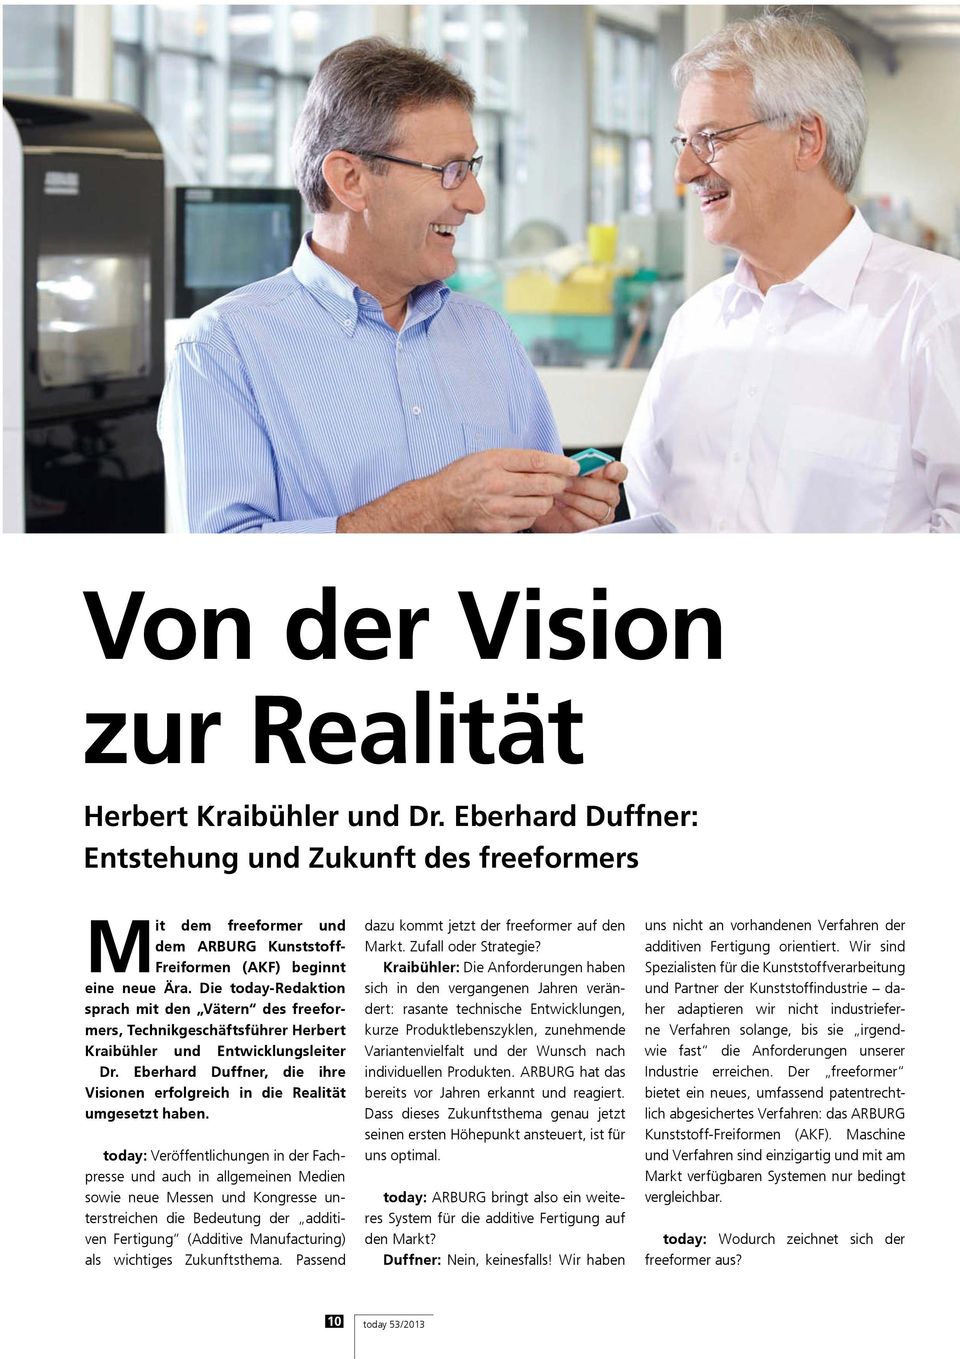 Eberhard Duffner, die ihre Visionen erfolgreich in die Realität umgesetzt haben.